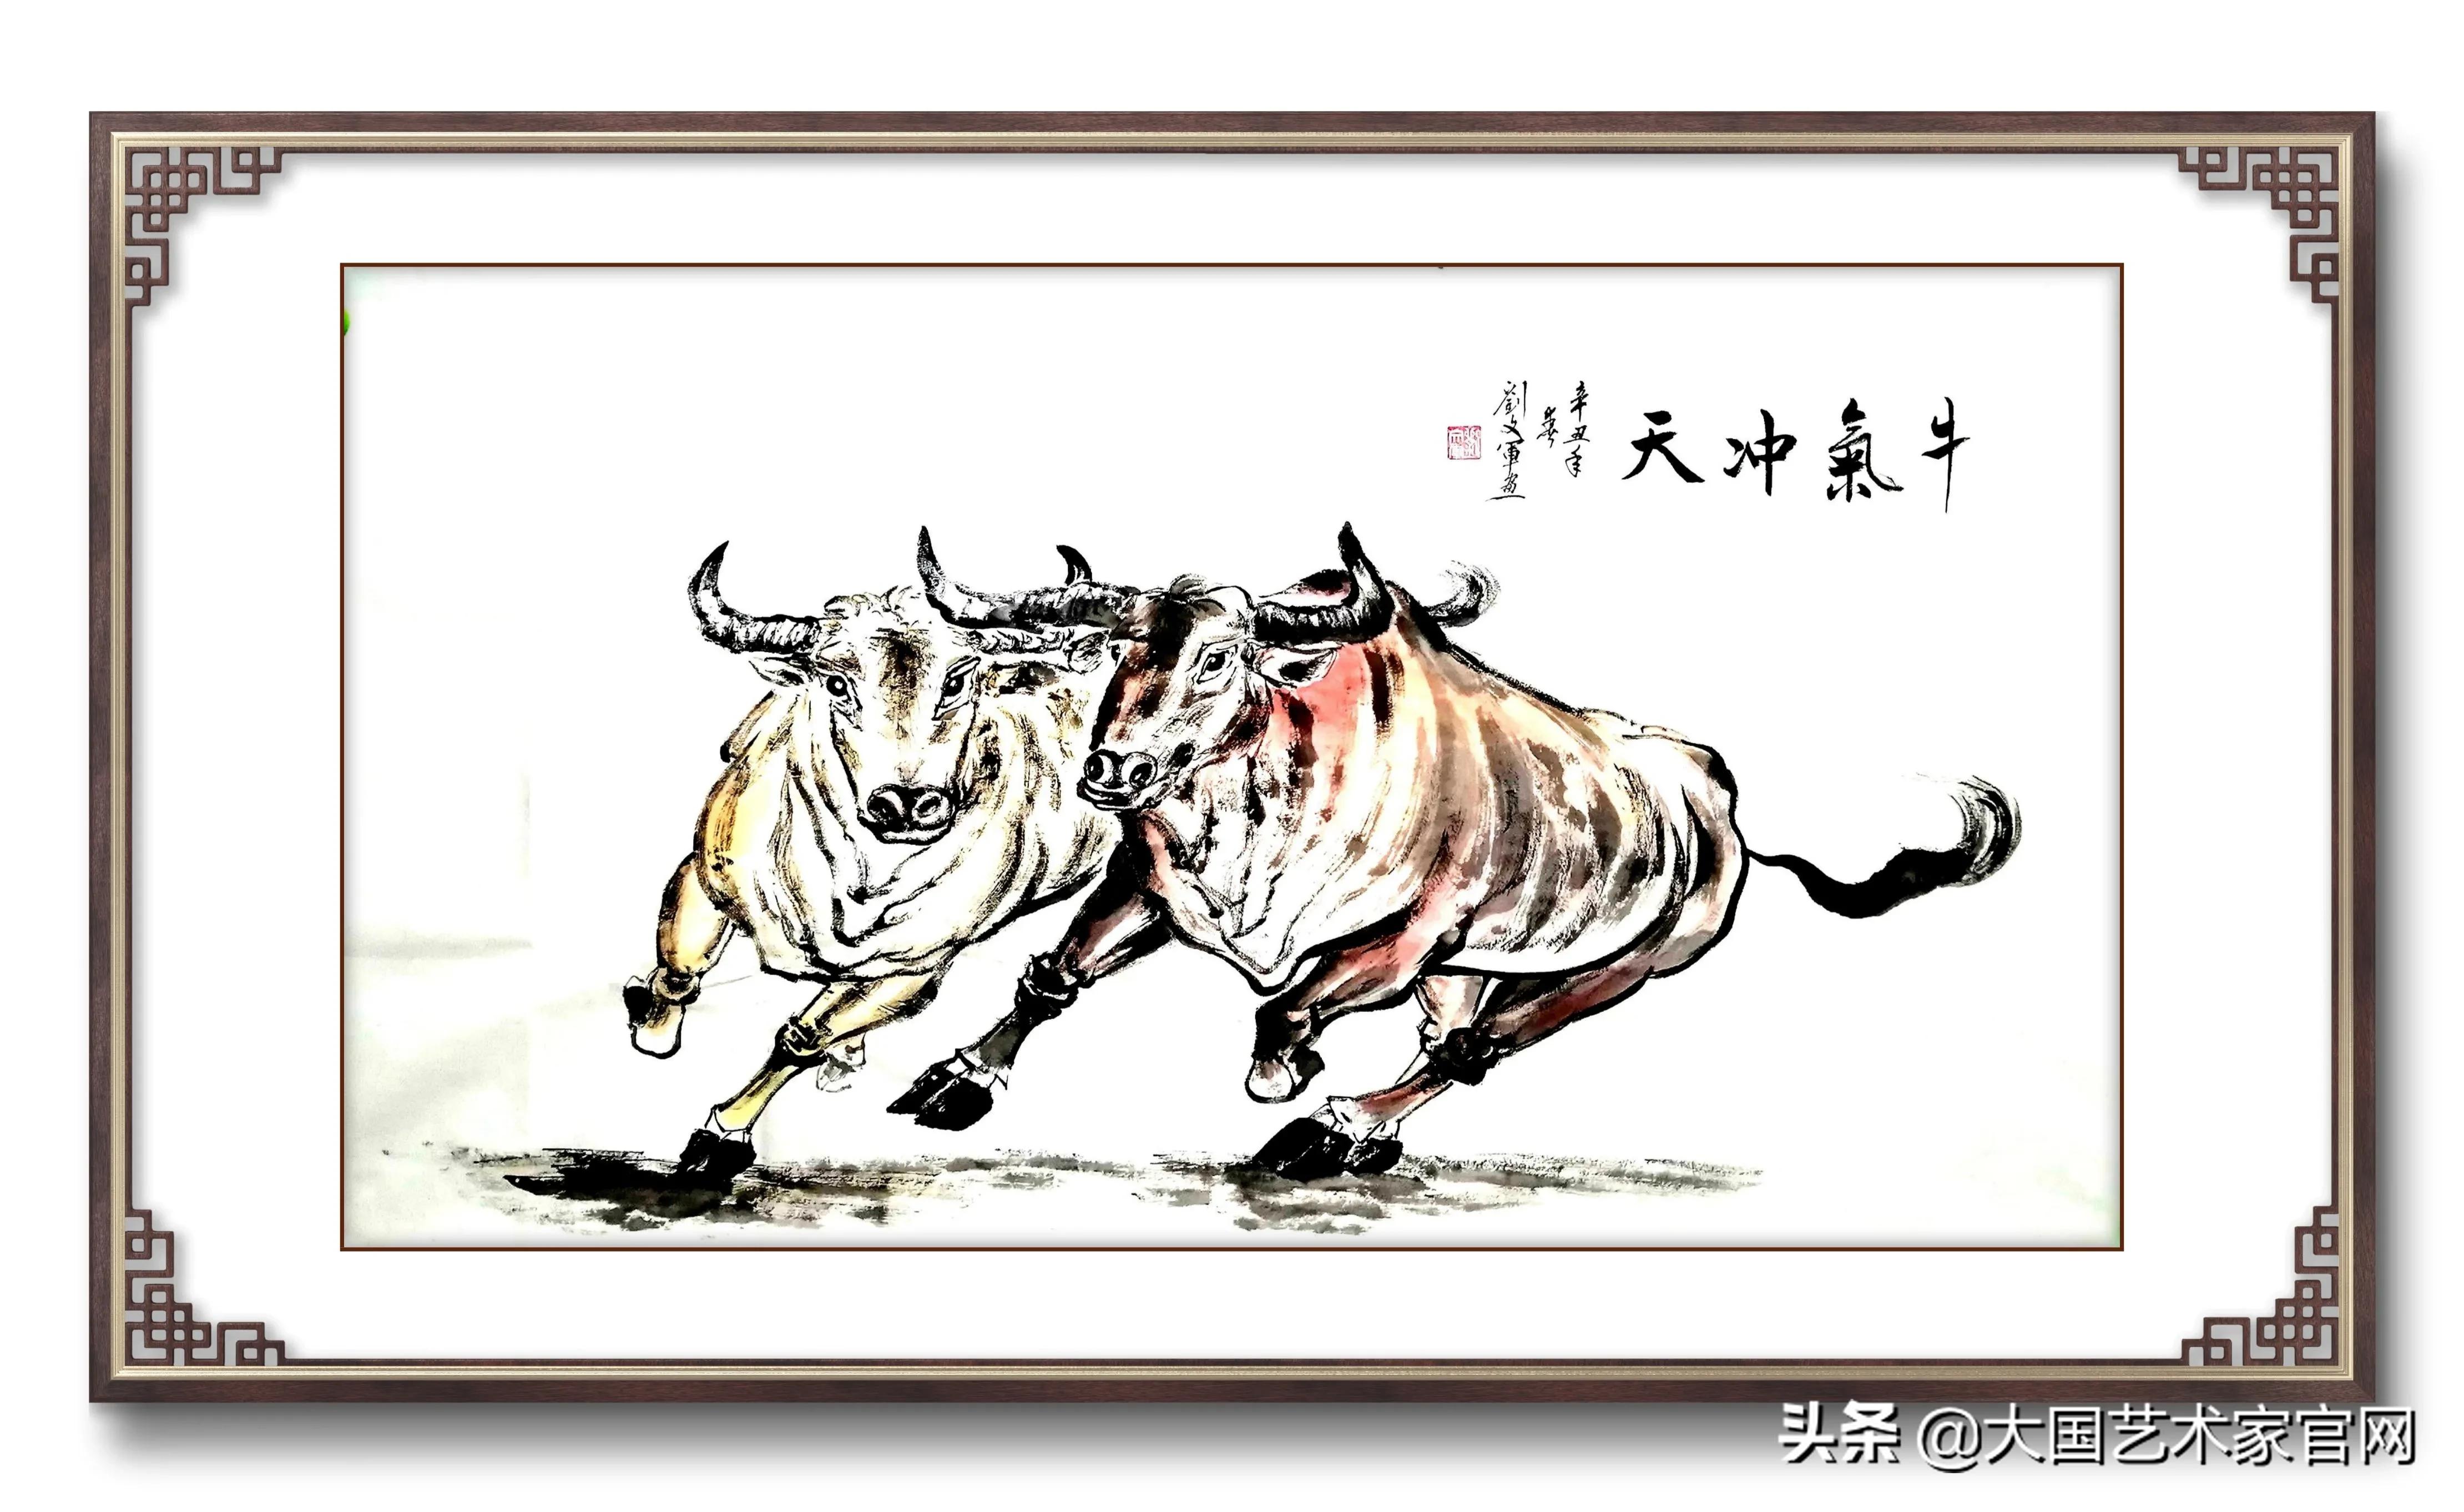 刘文军 著名画家《春满海陵 犇牛不息》——苏陈镇农民书画展